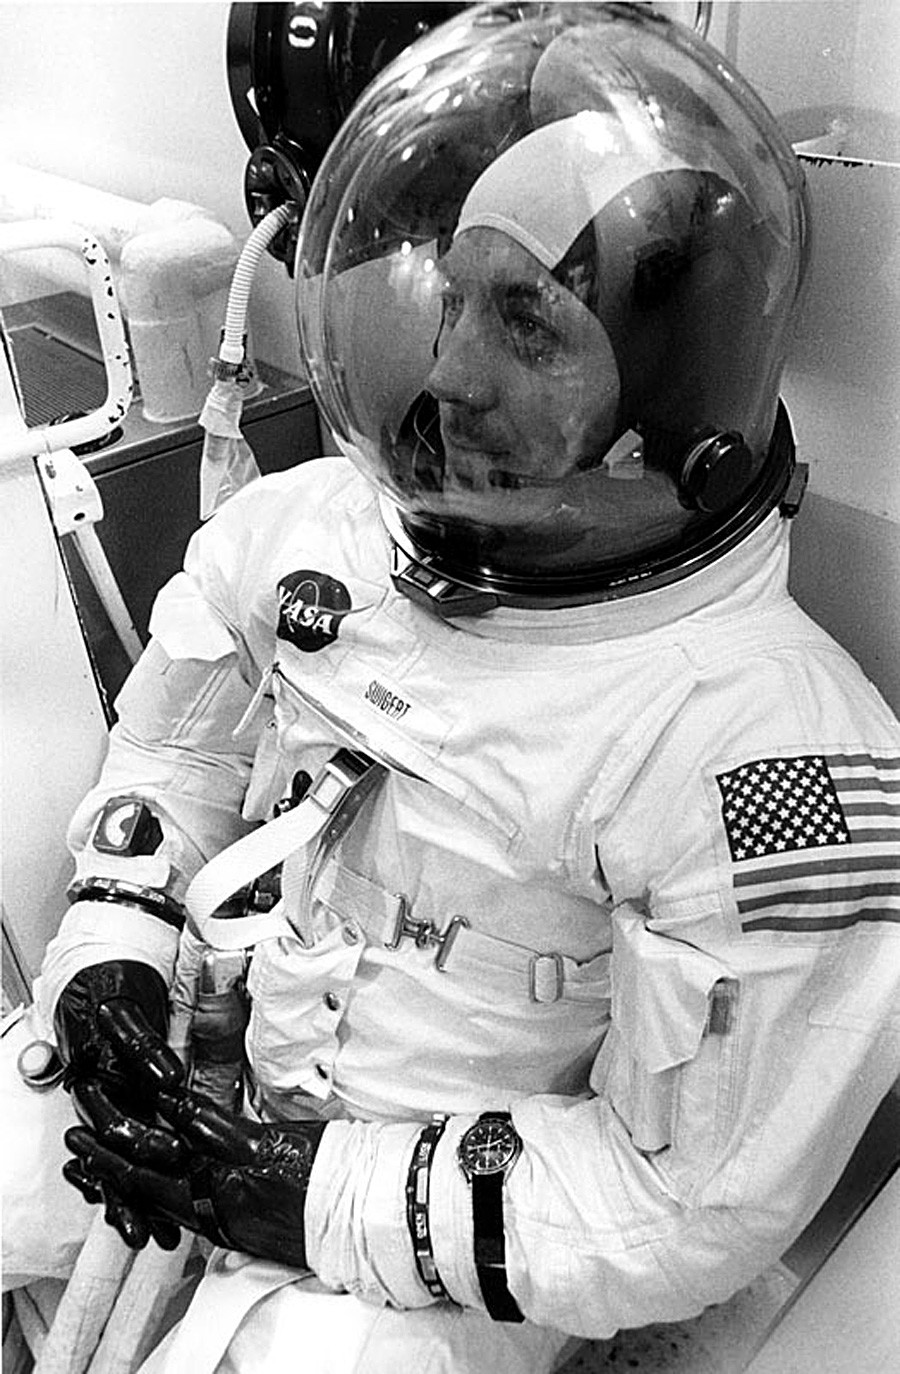 Ameriški astronavt Jack Swigert med odštevanjem pred vzletom Apolla 13 z uro Omega, 11. 4. 1970